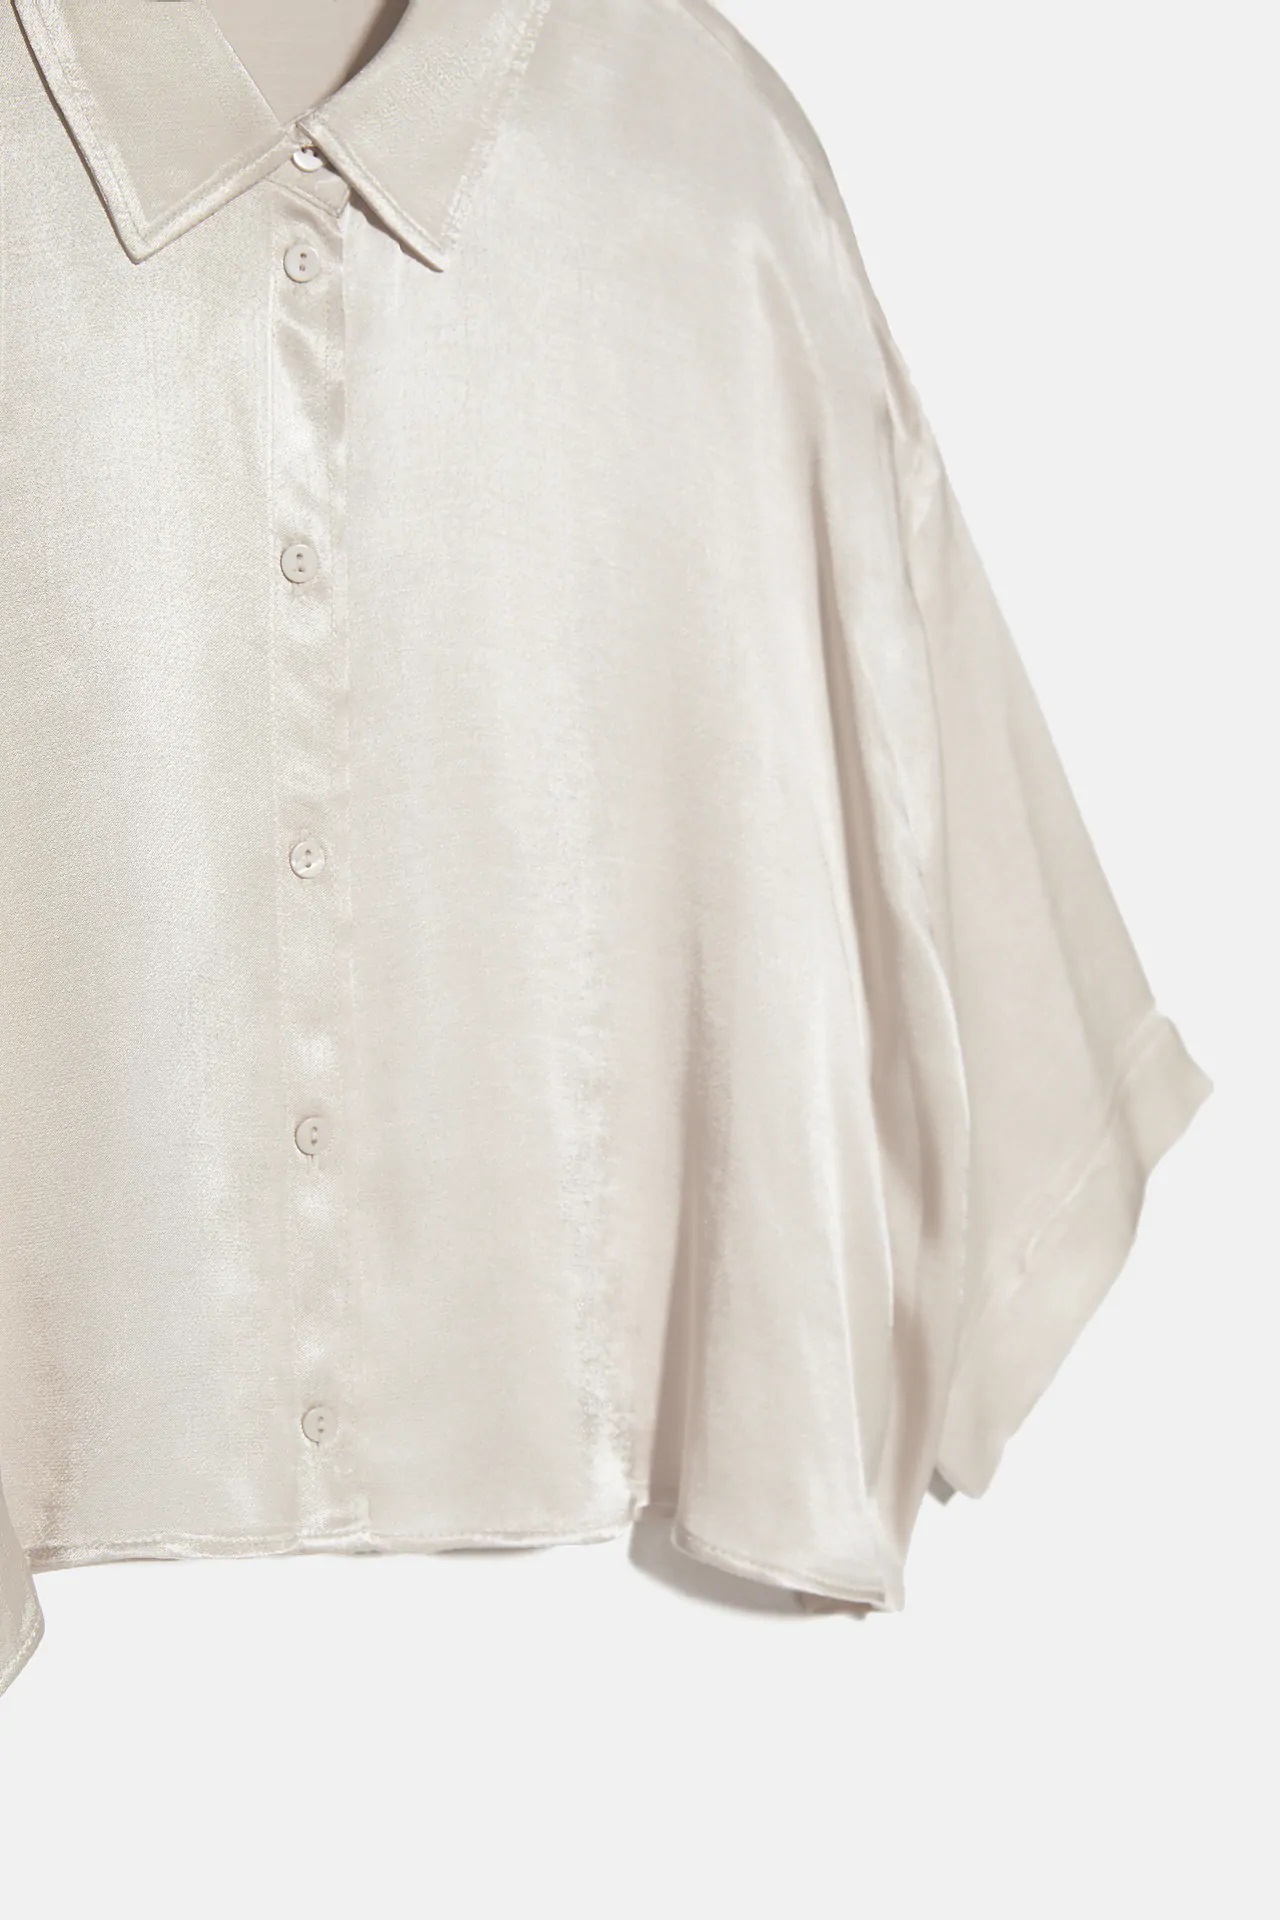 De Amelia Bono a María Pombo, estas son las camisas blancas de Zara que triunfan